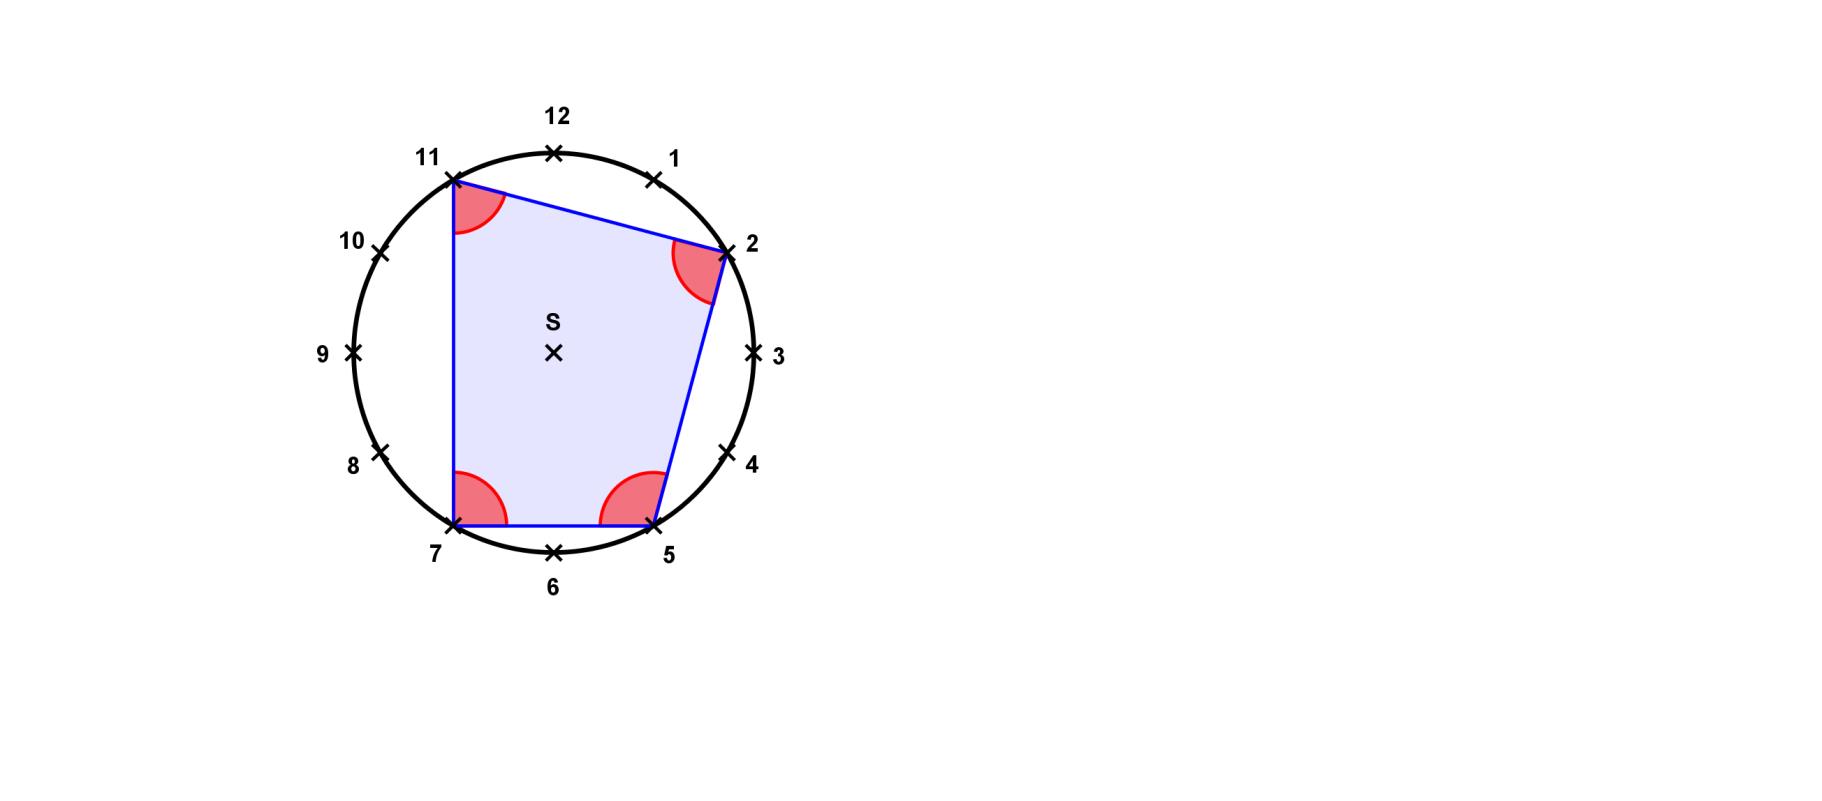 3.6. Obvodový středový úhel. Vypočtěte velikosti vnitřníh úhlů ve čtyřúhelníku, který dostneme spojením bodů odpovídjííh číslům, 3, 7, 0 n iferníku hodin.